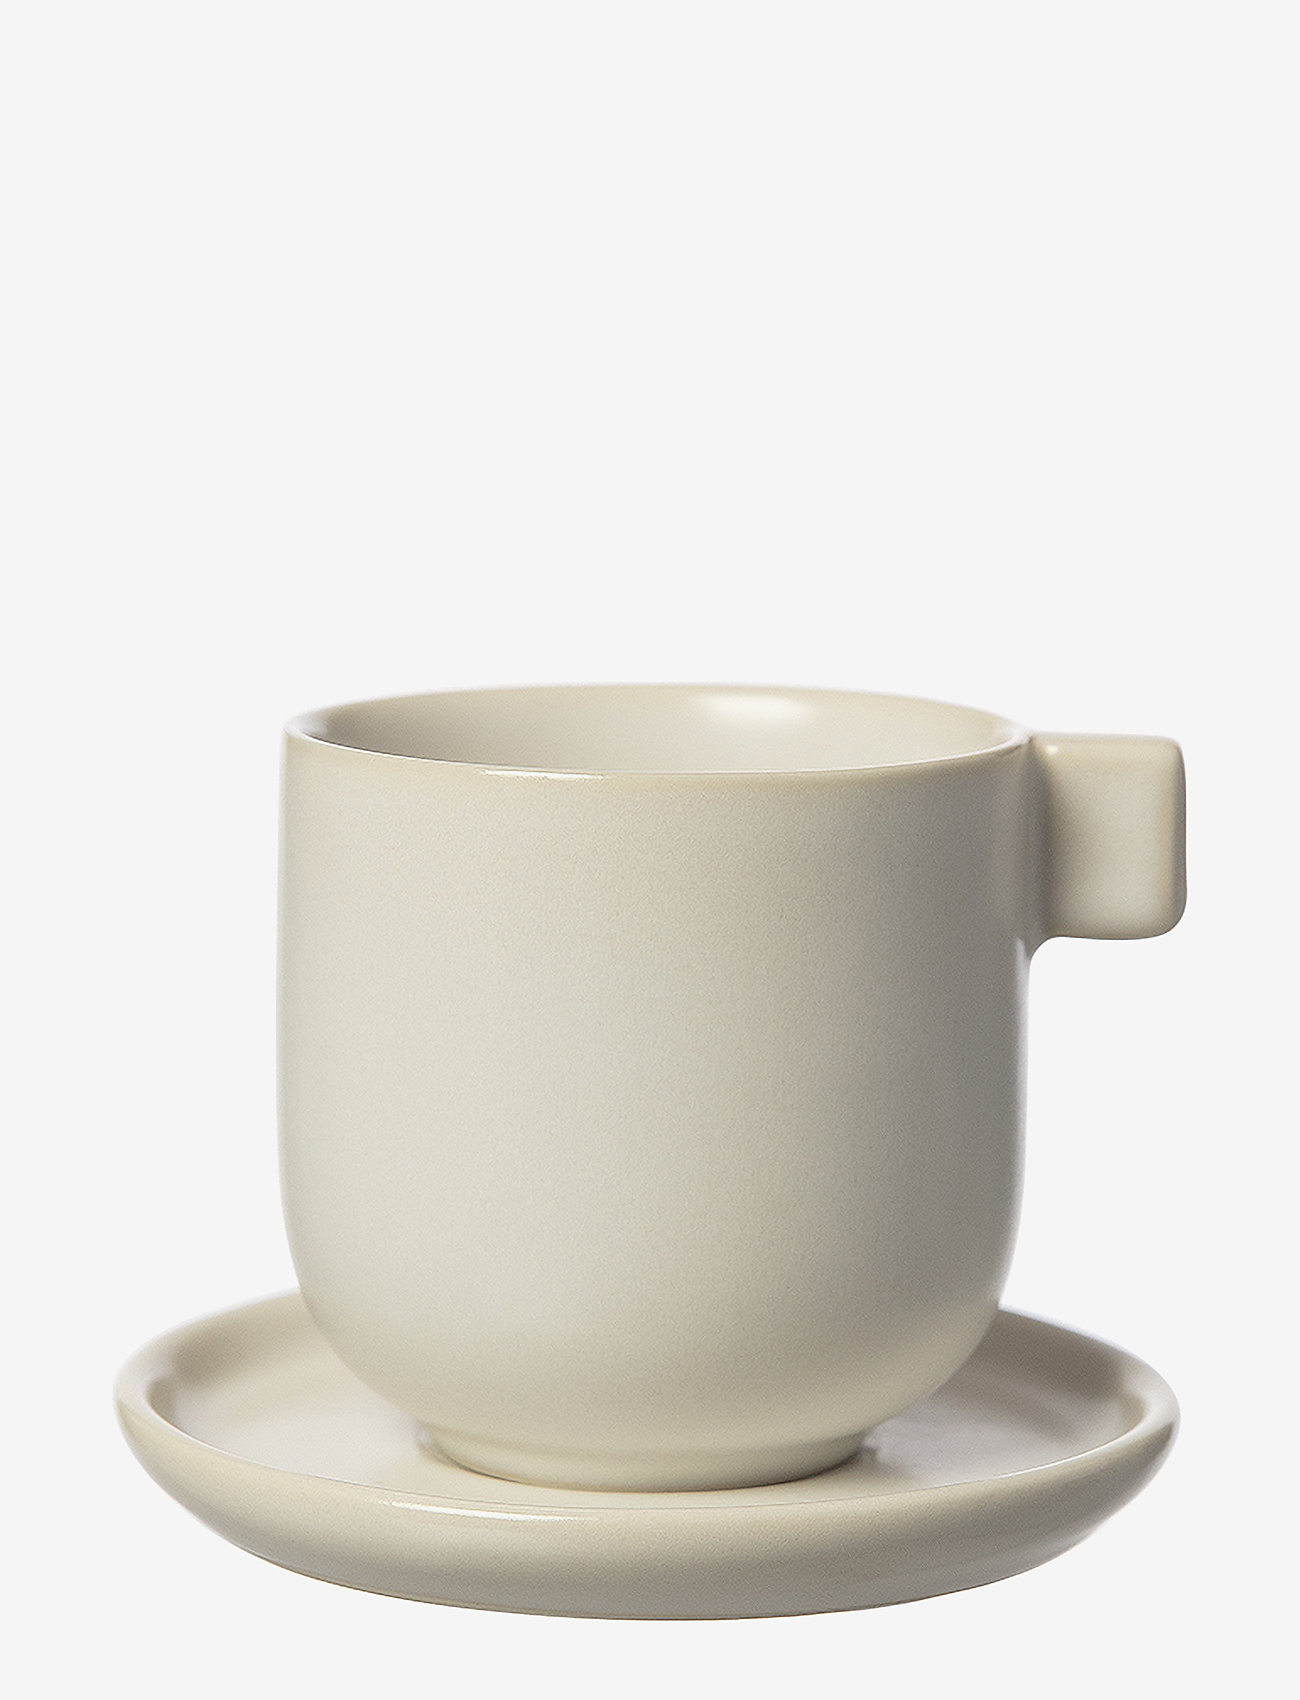 ERNST - Cup w saucer for coffee - die niedrigsten preise - white sand - 0